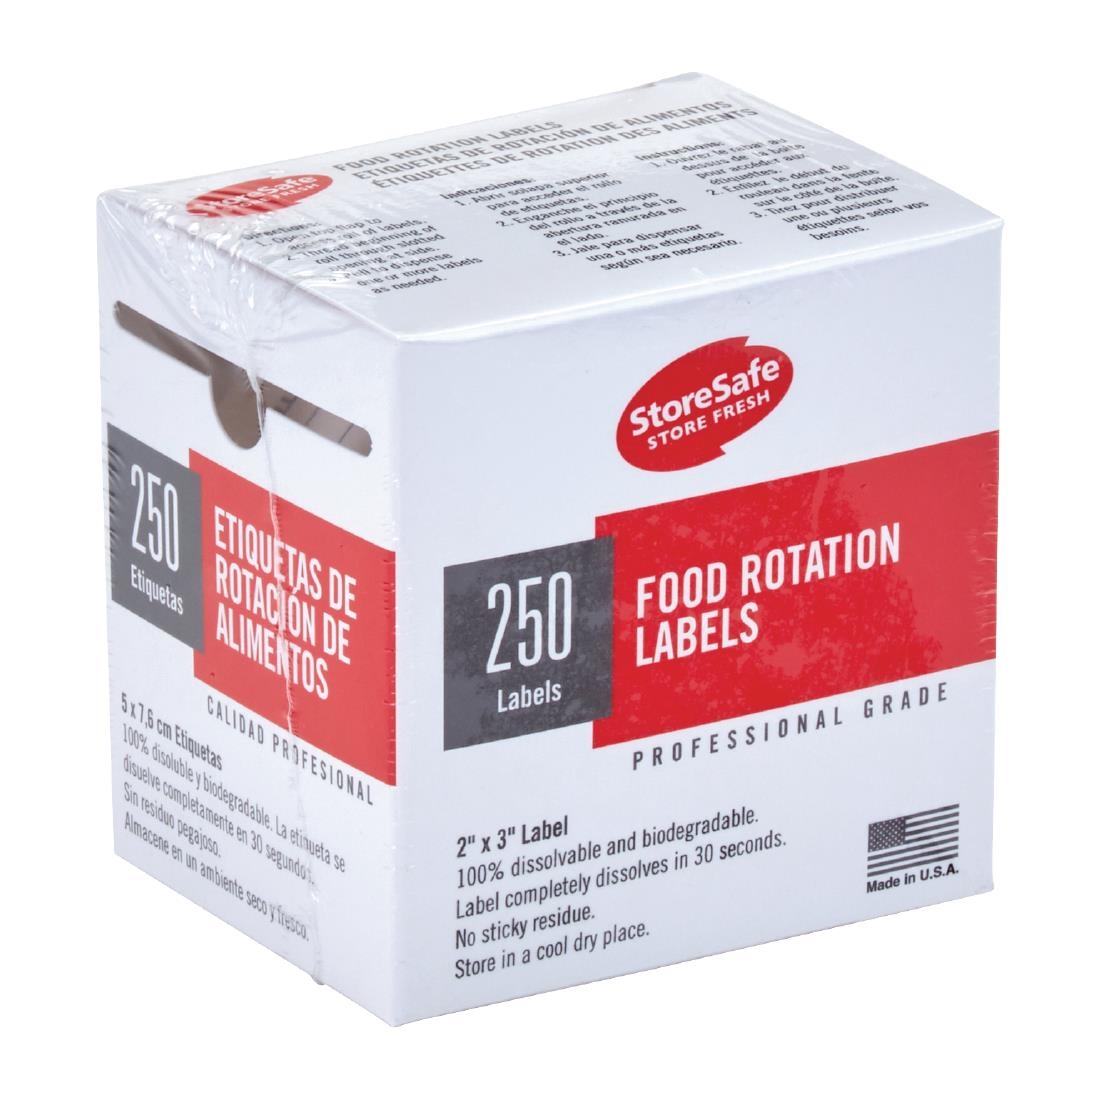 Étiquettes alimentaires StoreSafe | 24x 250 étiquettes